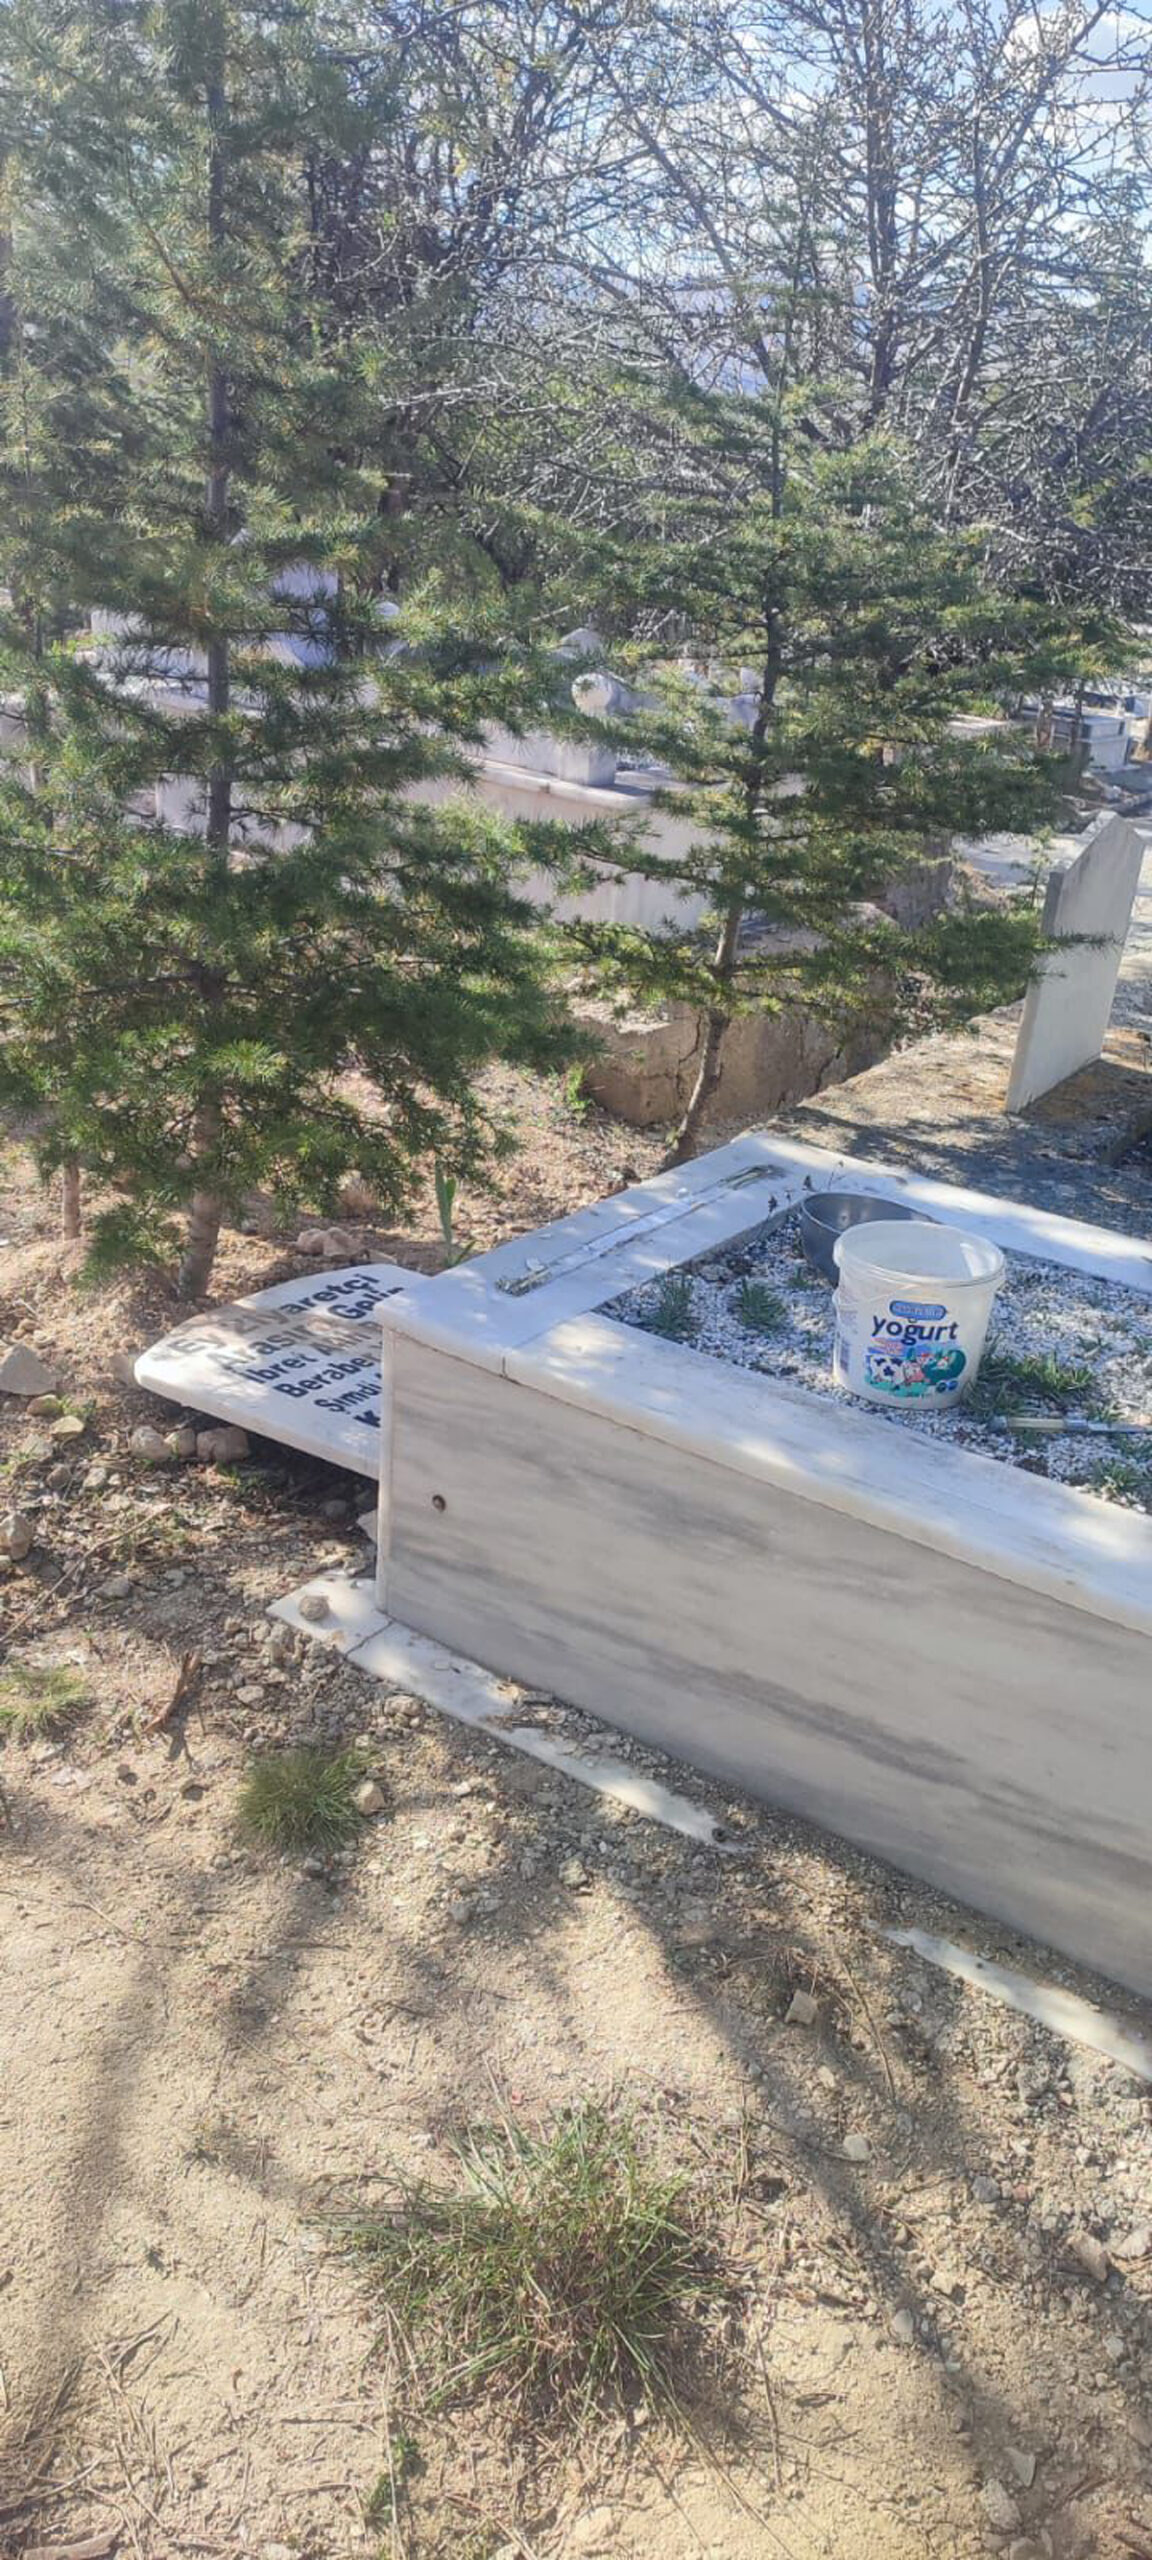 Afyon’da Mezarlıklara Çirkin Saldırı